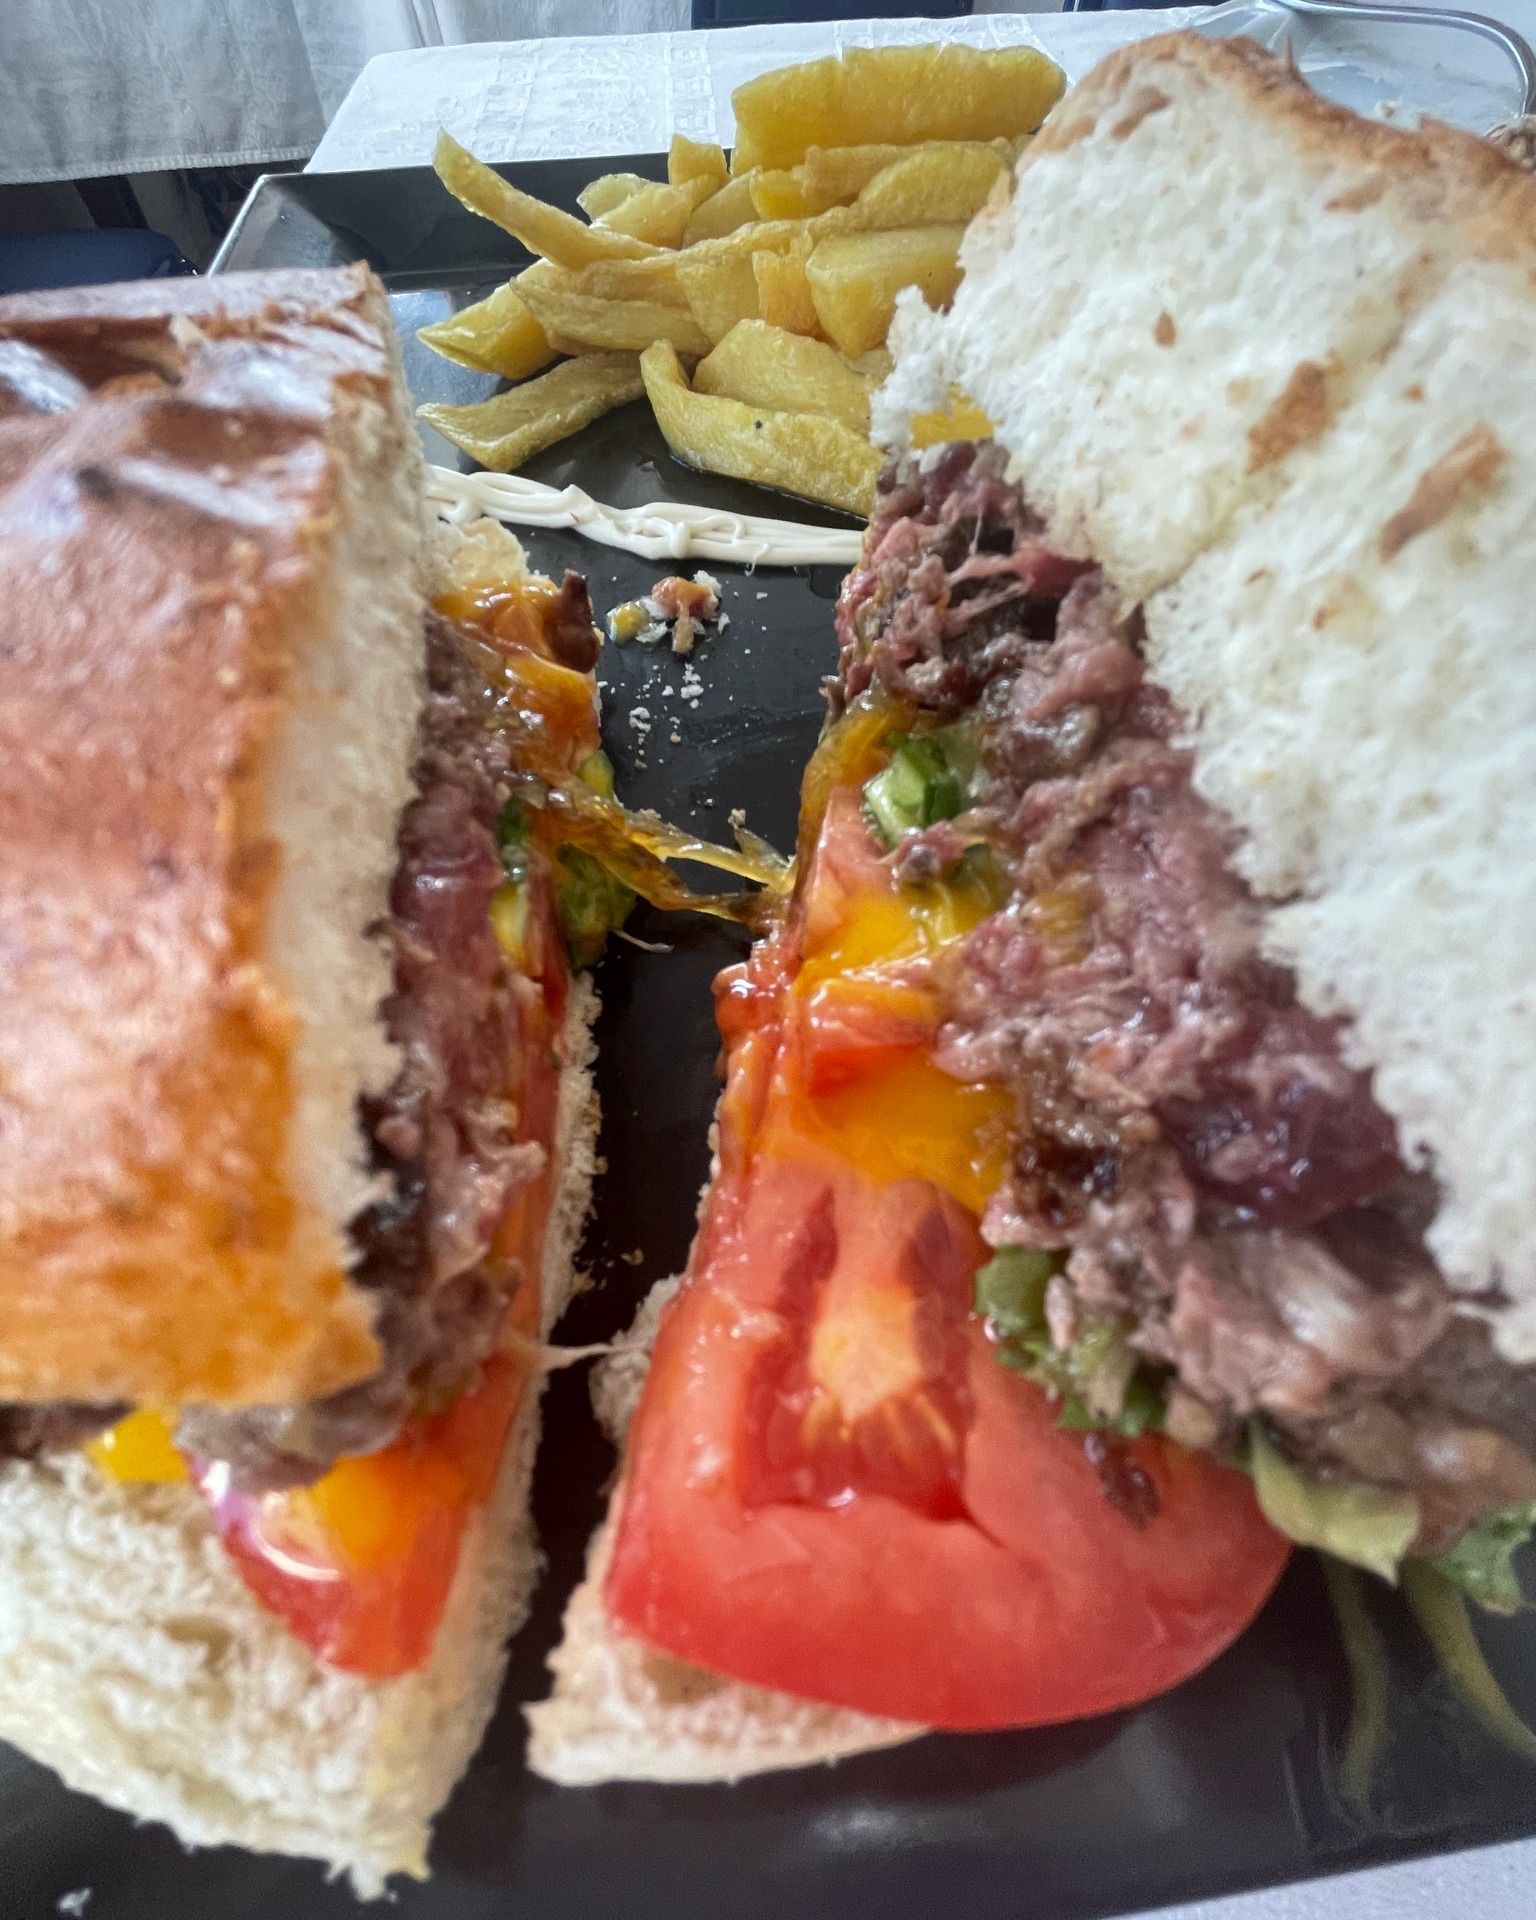 Nuestras hamburguesas impresionan, y no es para menos. Ven a probarlas ahora!¡Te esperamos!
www.elcrucechauchina.com
 958 44 60 62 - 699 67 88 75
#autenticohoteldecarretera
#comerbien #restaurantegranda
#hotelbarato #camionero #carnealabrasa

ＪＯＳ ＰＥＲ